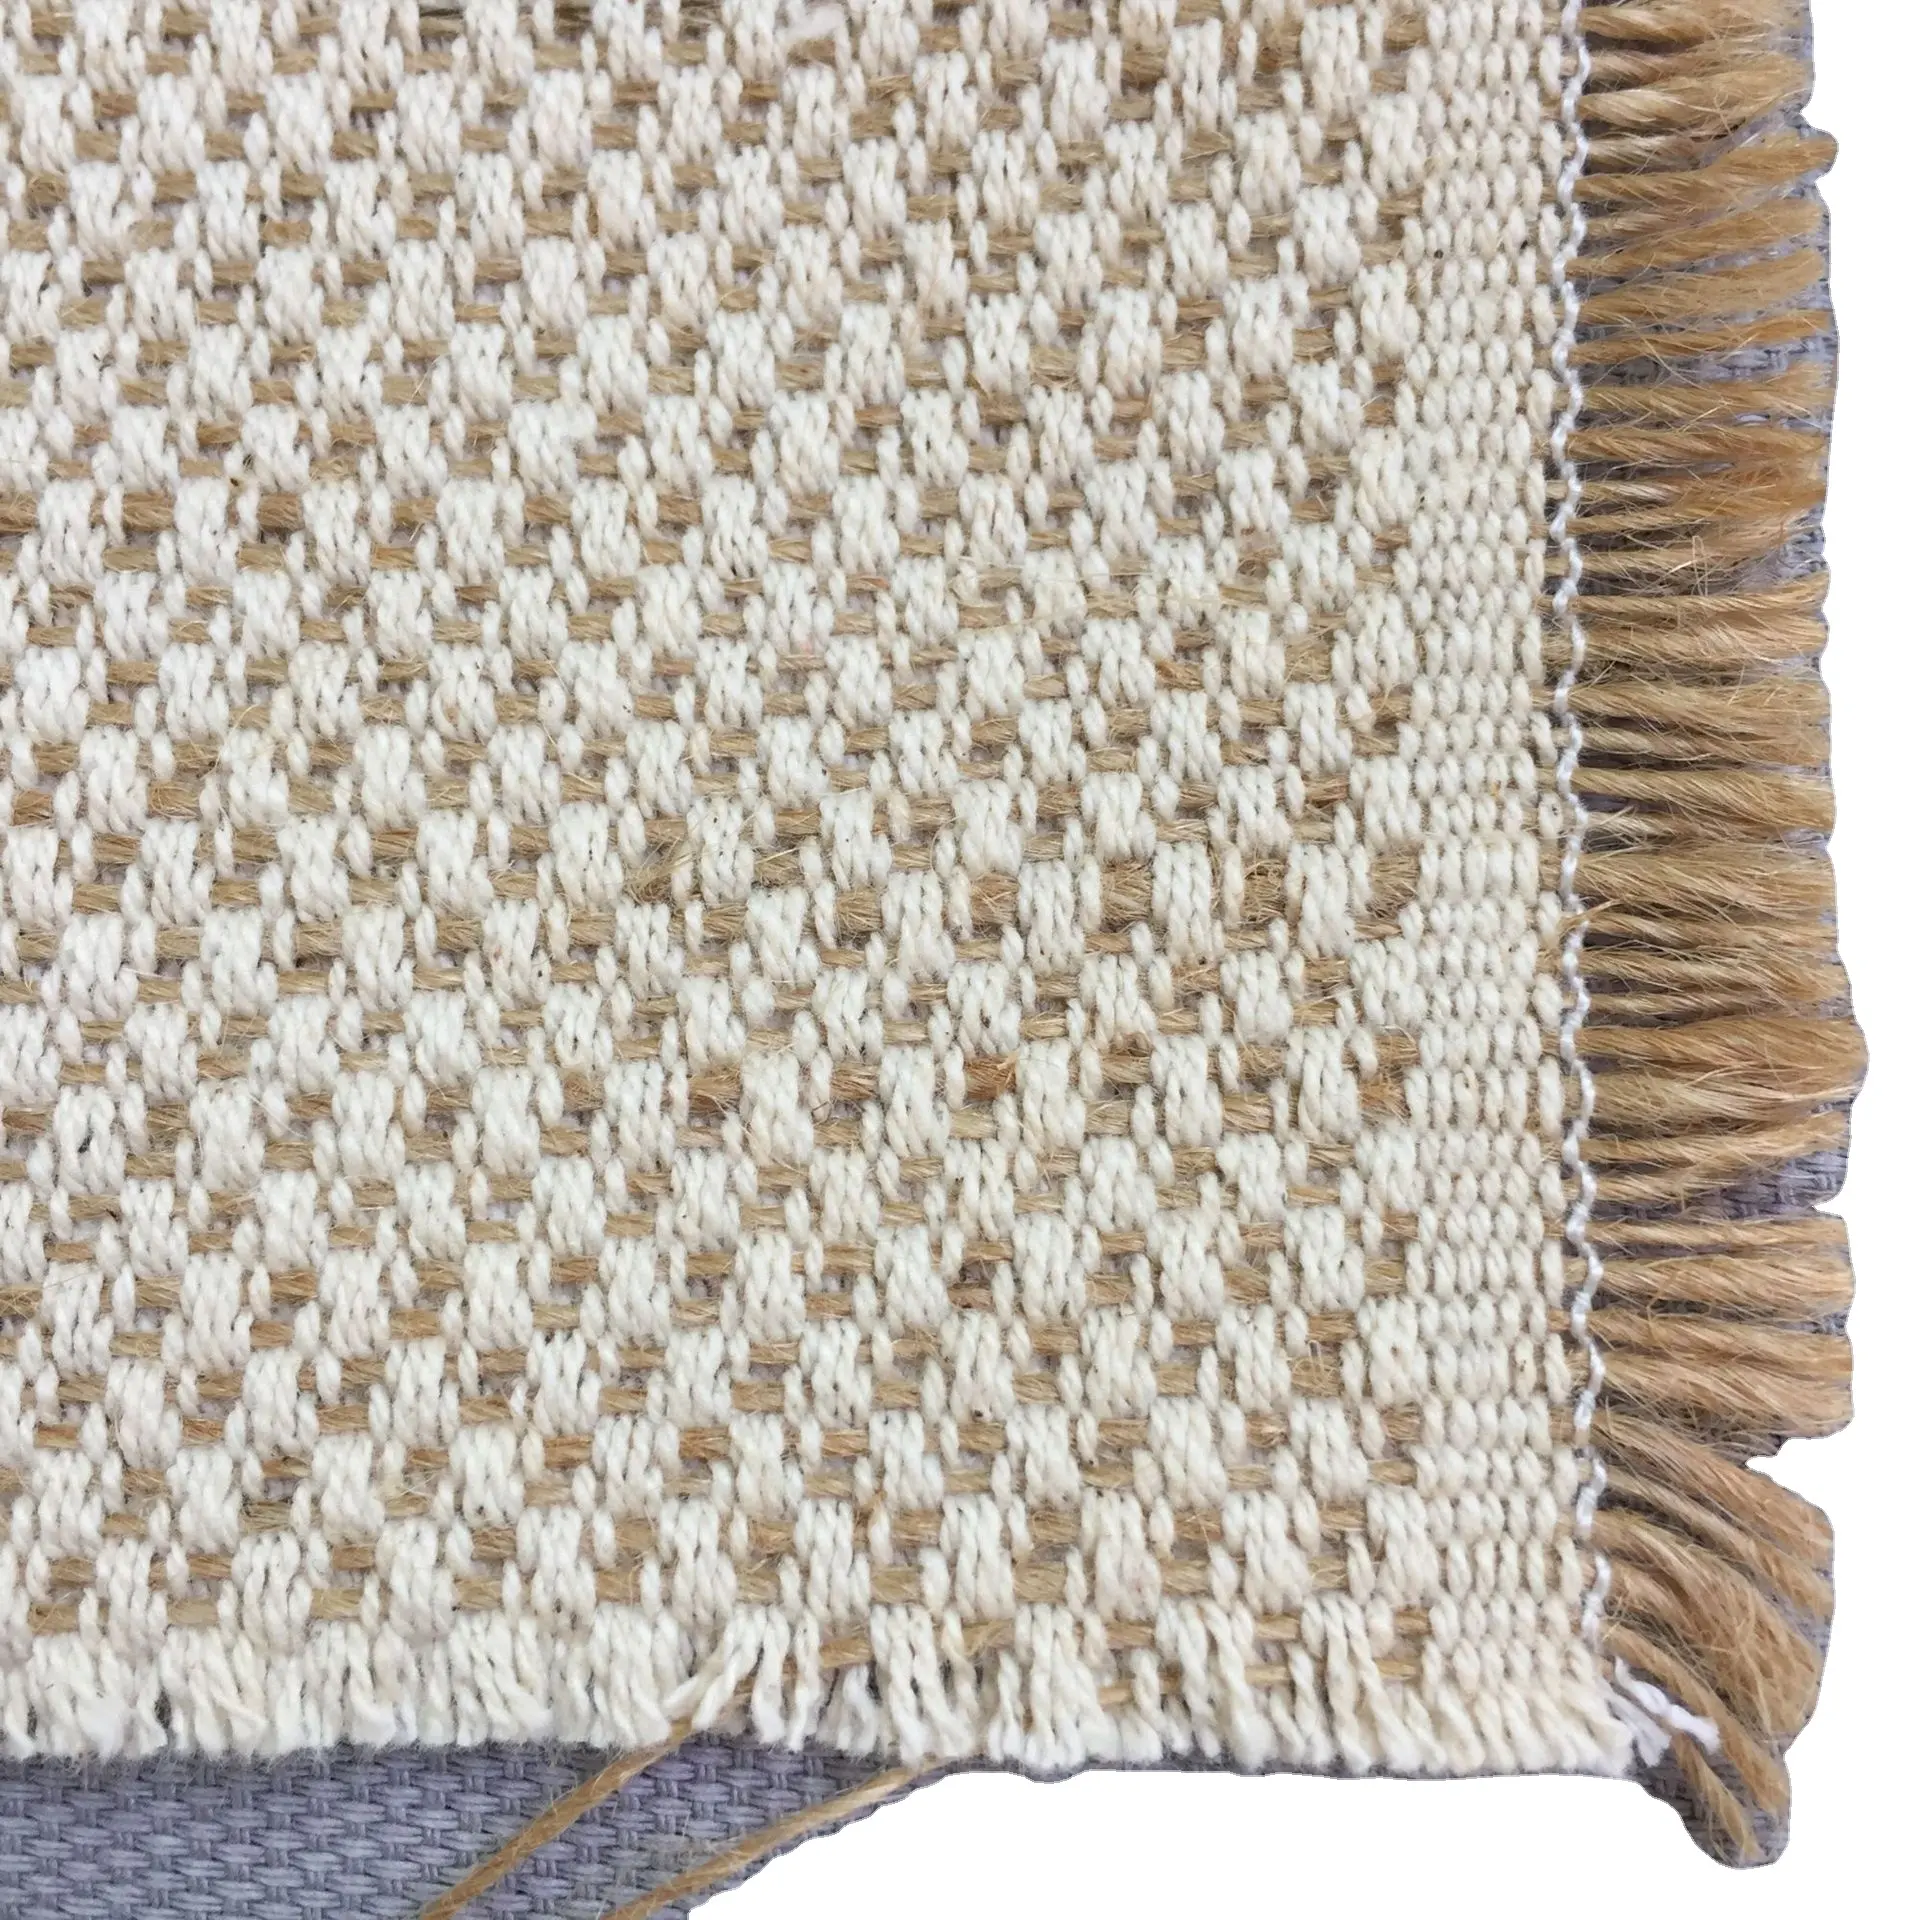 Jüt pamuk % karışık kumaş jakarlı örgü elyaf kanepe için perde kumaşı çuval bezi pamuk karışık Hessian organik kenevir kumaş